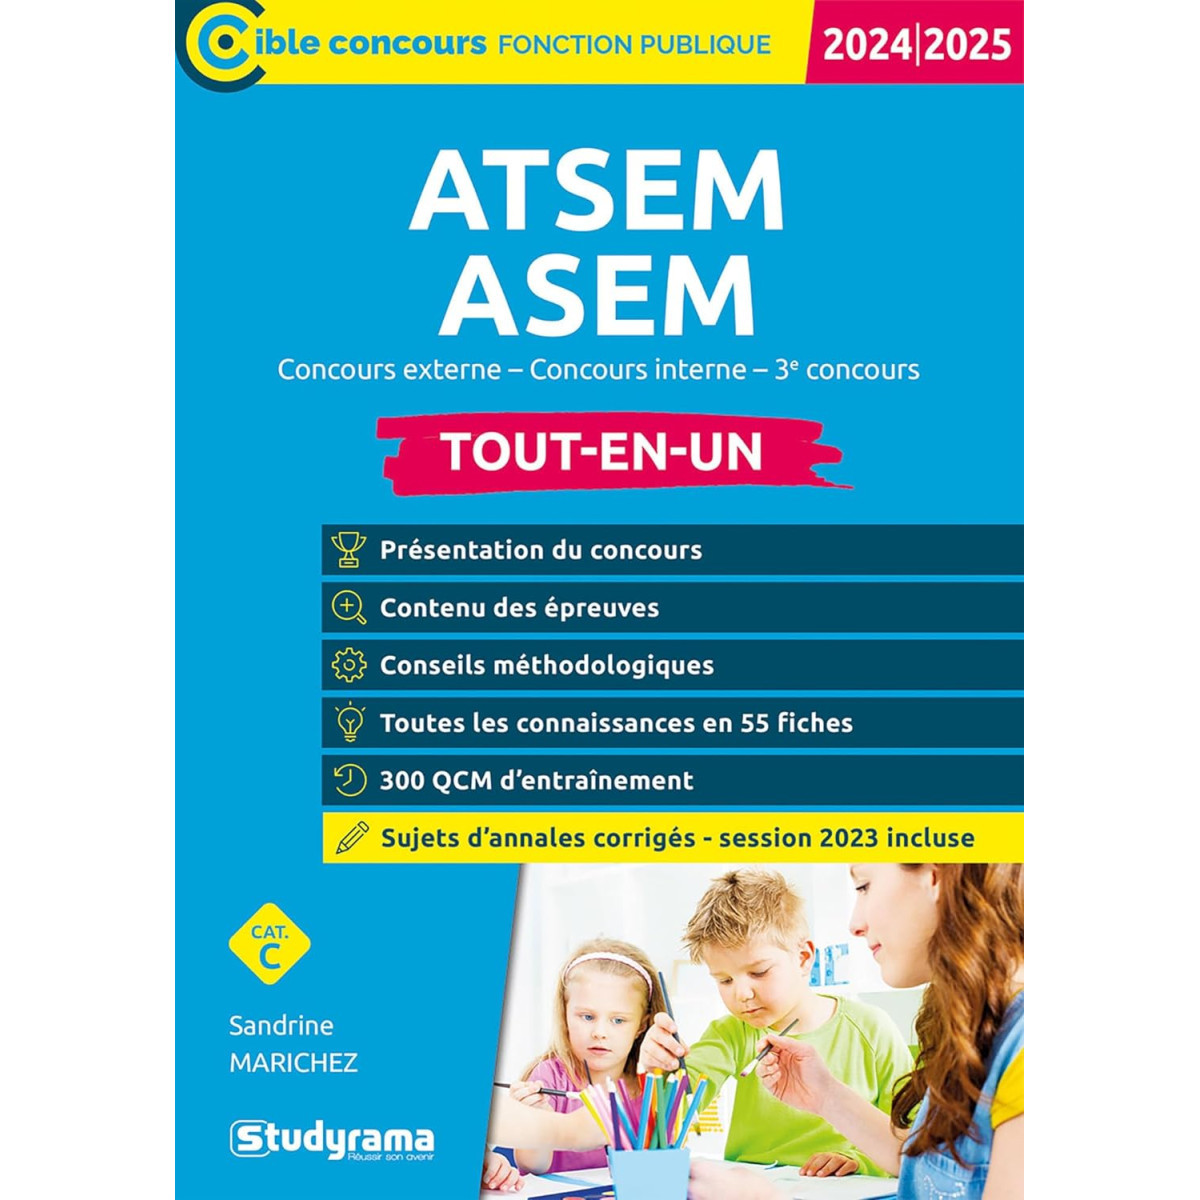 ATSEM/ASEM - Concours externe, concours interne, 3e concours Tout-en-un